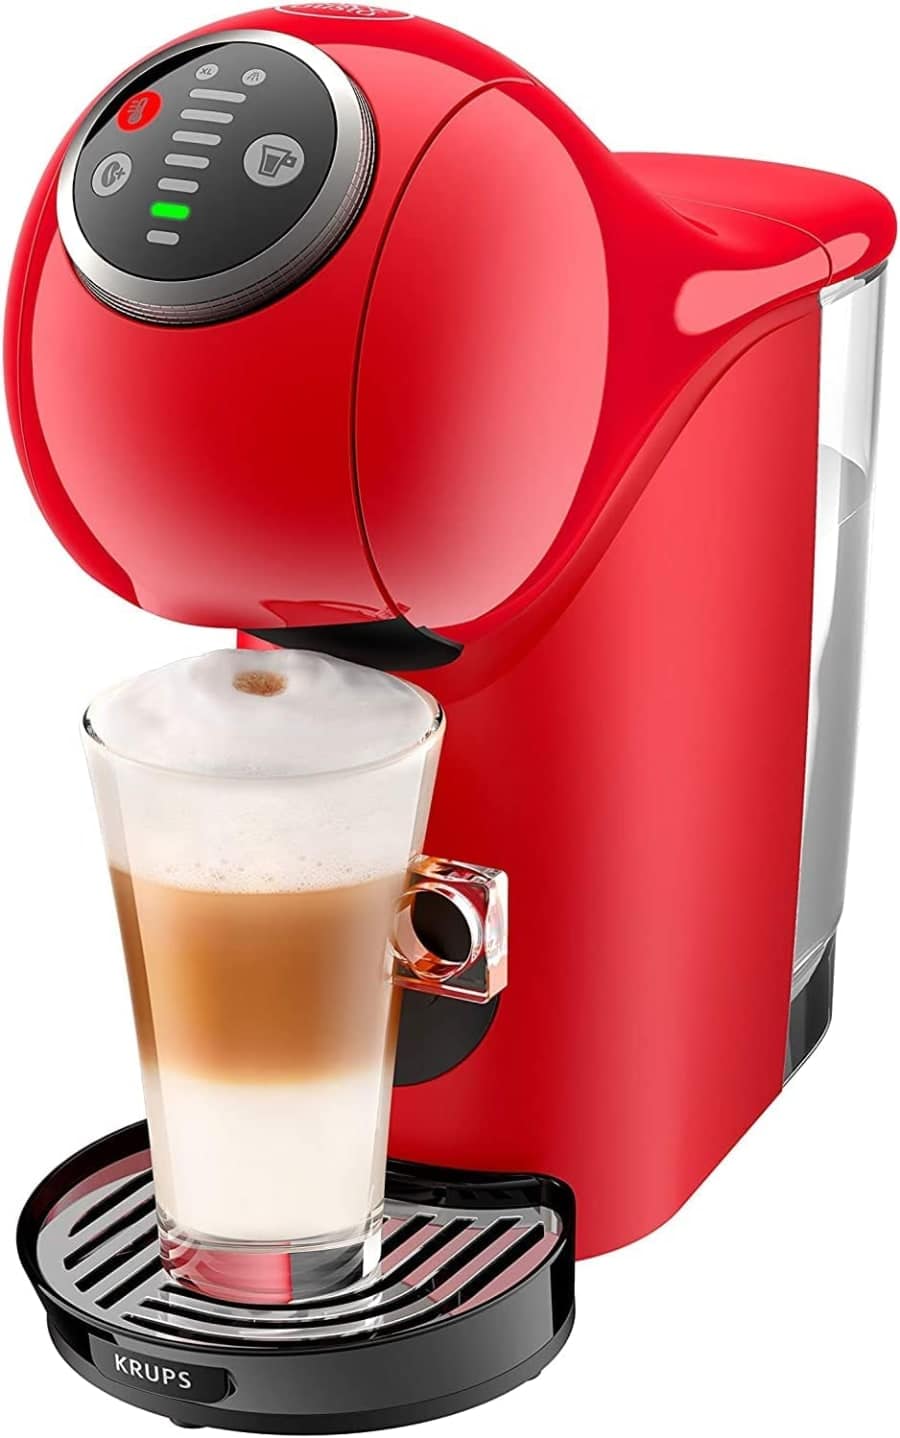 Máquina de café con cápsulas y capuchino cremoso en taza transparente en  casa espresso cafeína beve